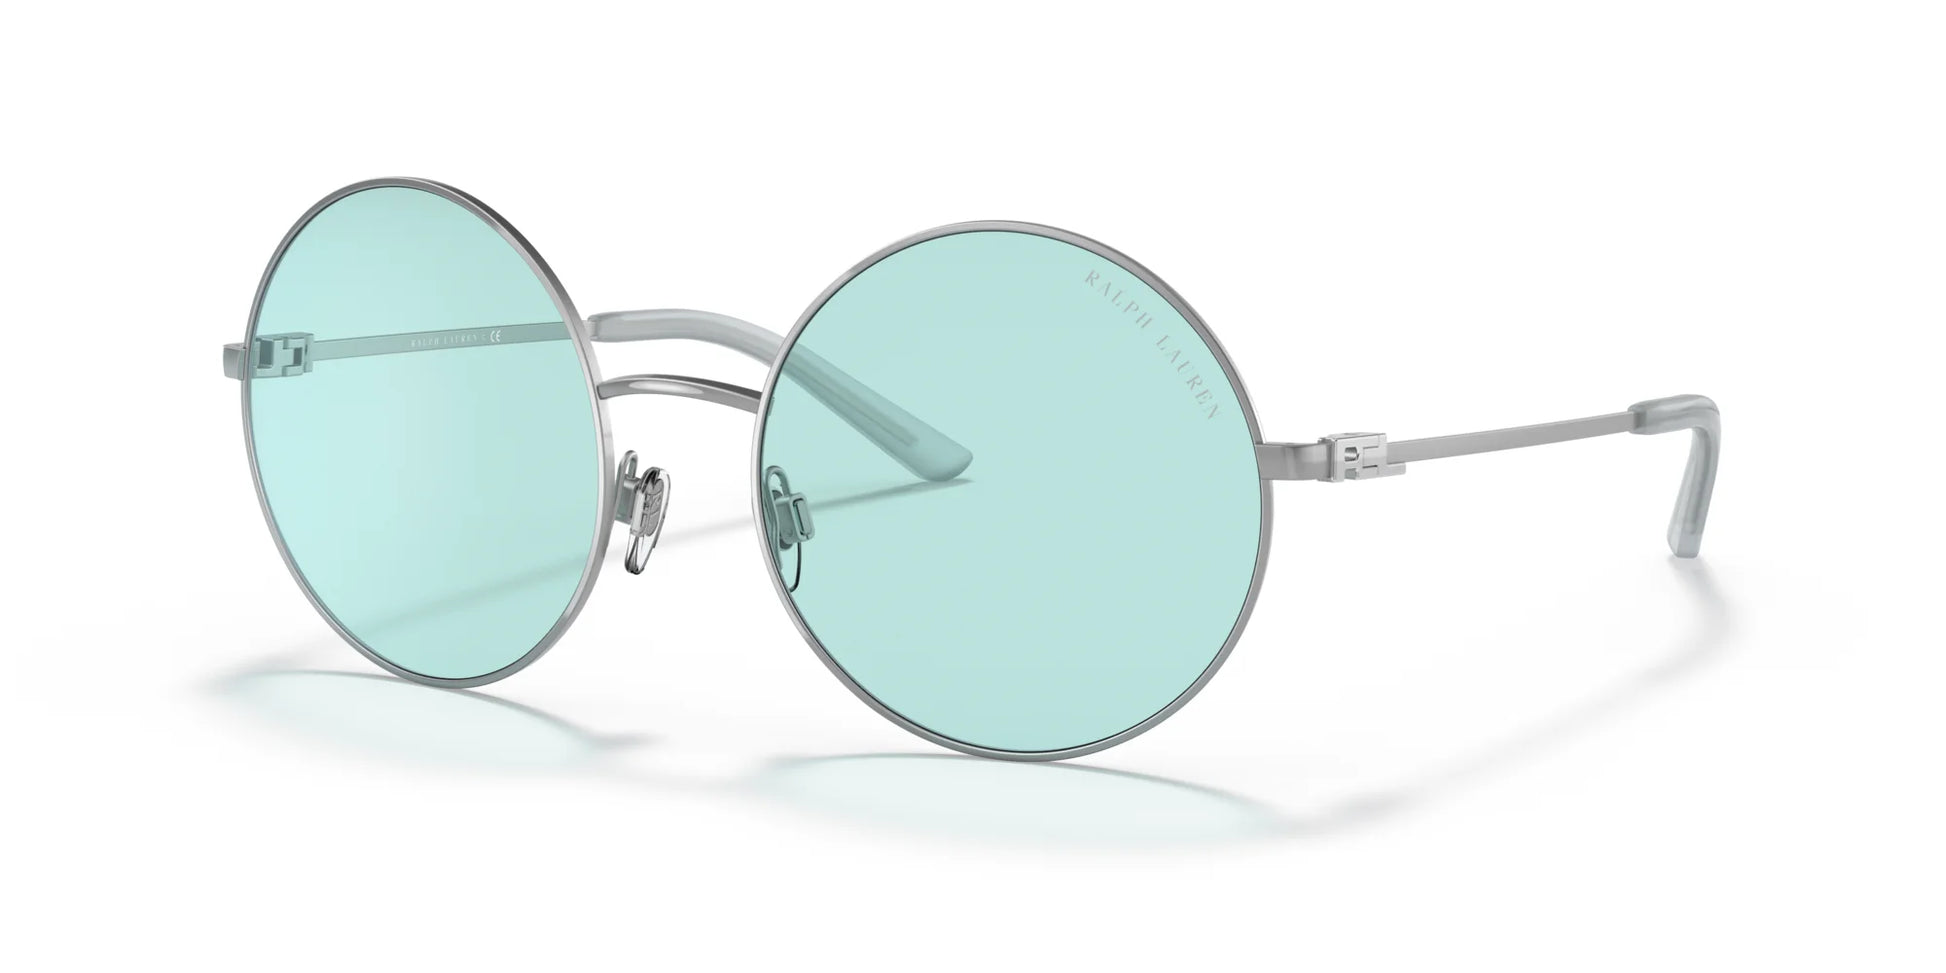 Ralph Lauren RL7072 Sunglasses Shiny Sanded Silver / Light Turquoise